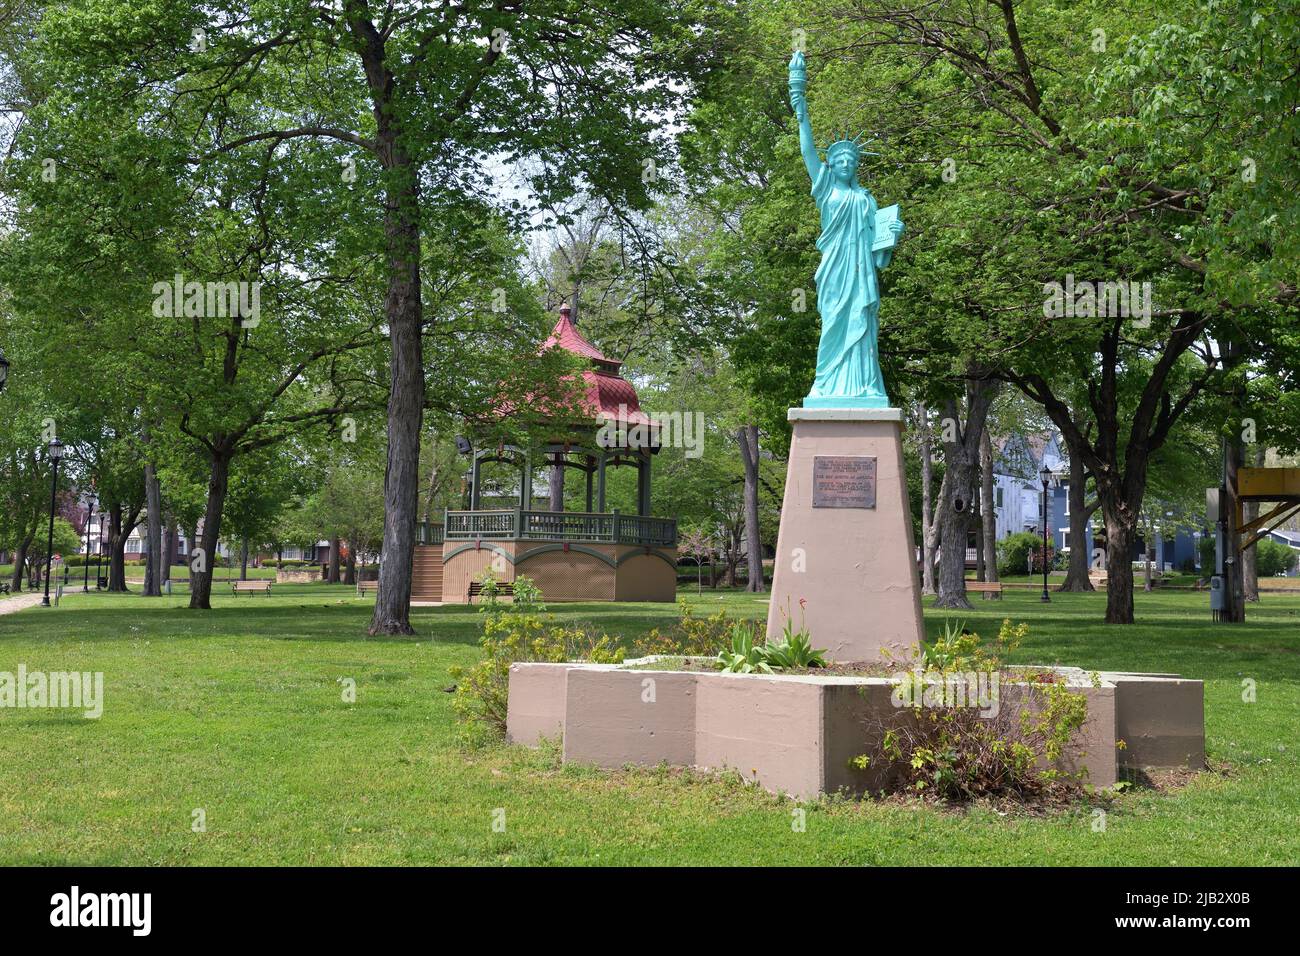 Fort Madison, Iowa, Estados Unidos. Una réplica de la estatua junto con un cenador son lo más destacado en un pequeño parque comunitario del medio oeste de los Estados Unidos. Foto de stock